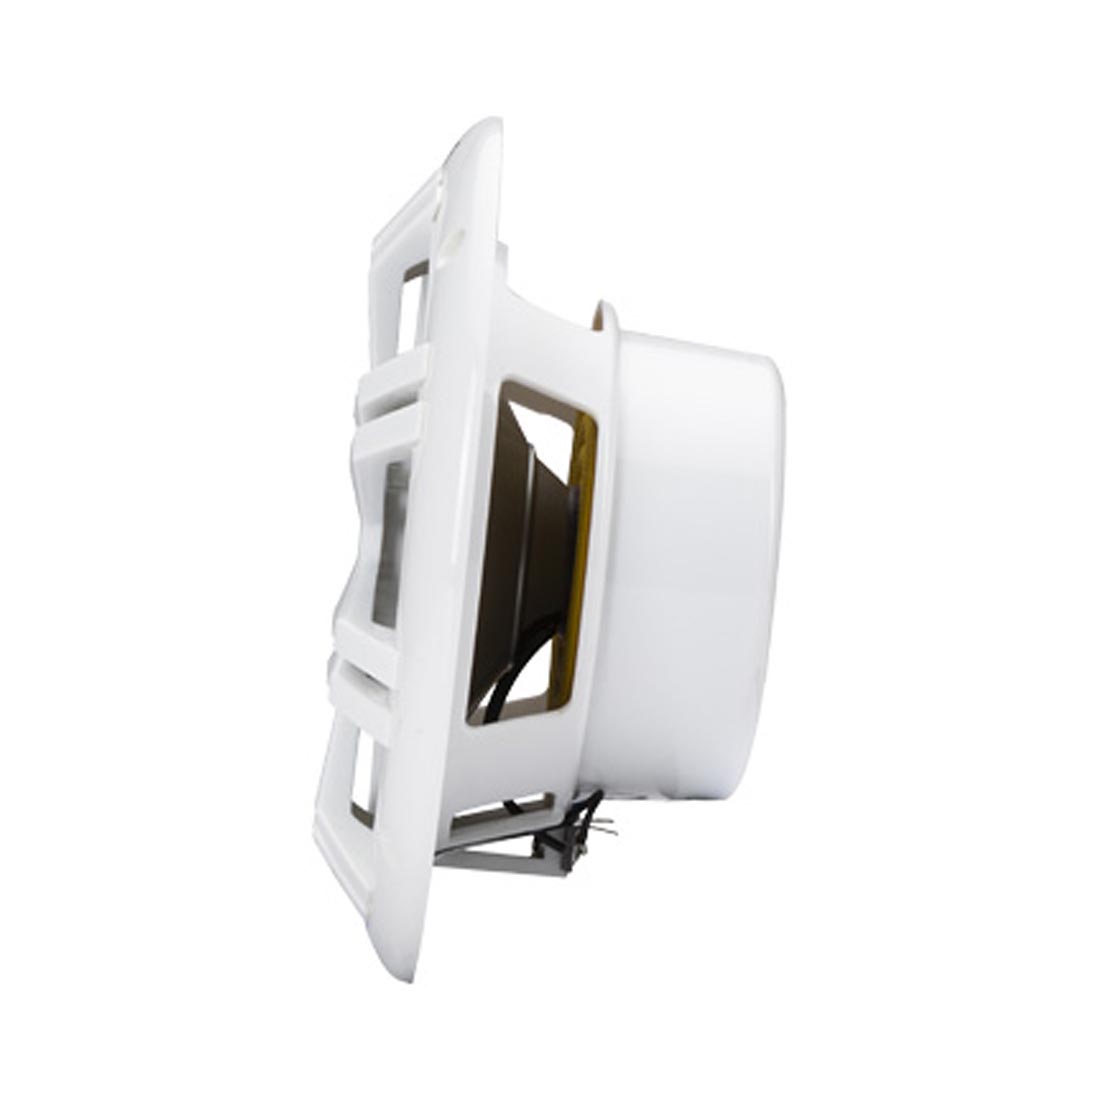 Kicker 49KM604W 6.5" 2-way Marine Coaxial Speakers - White